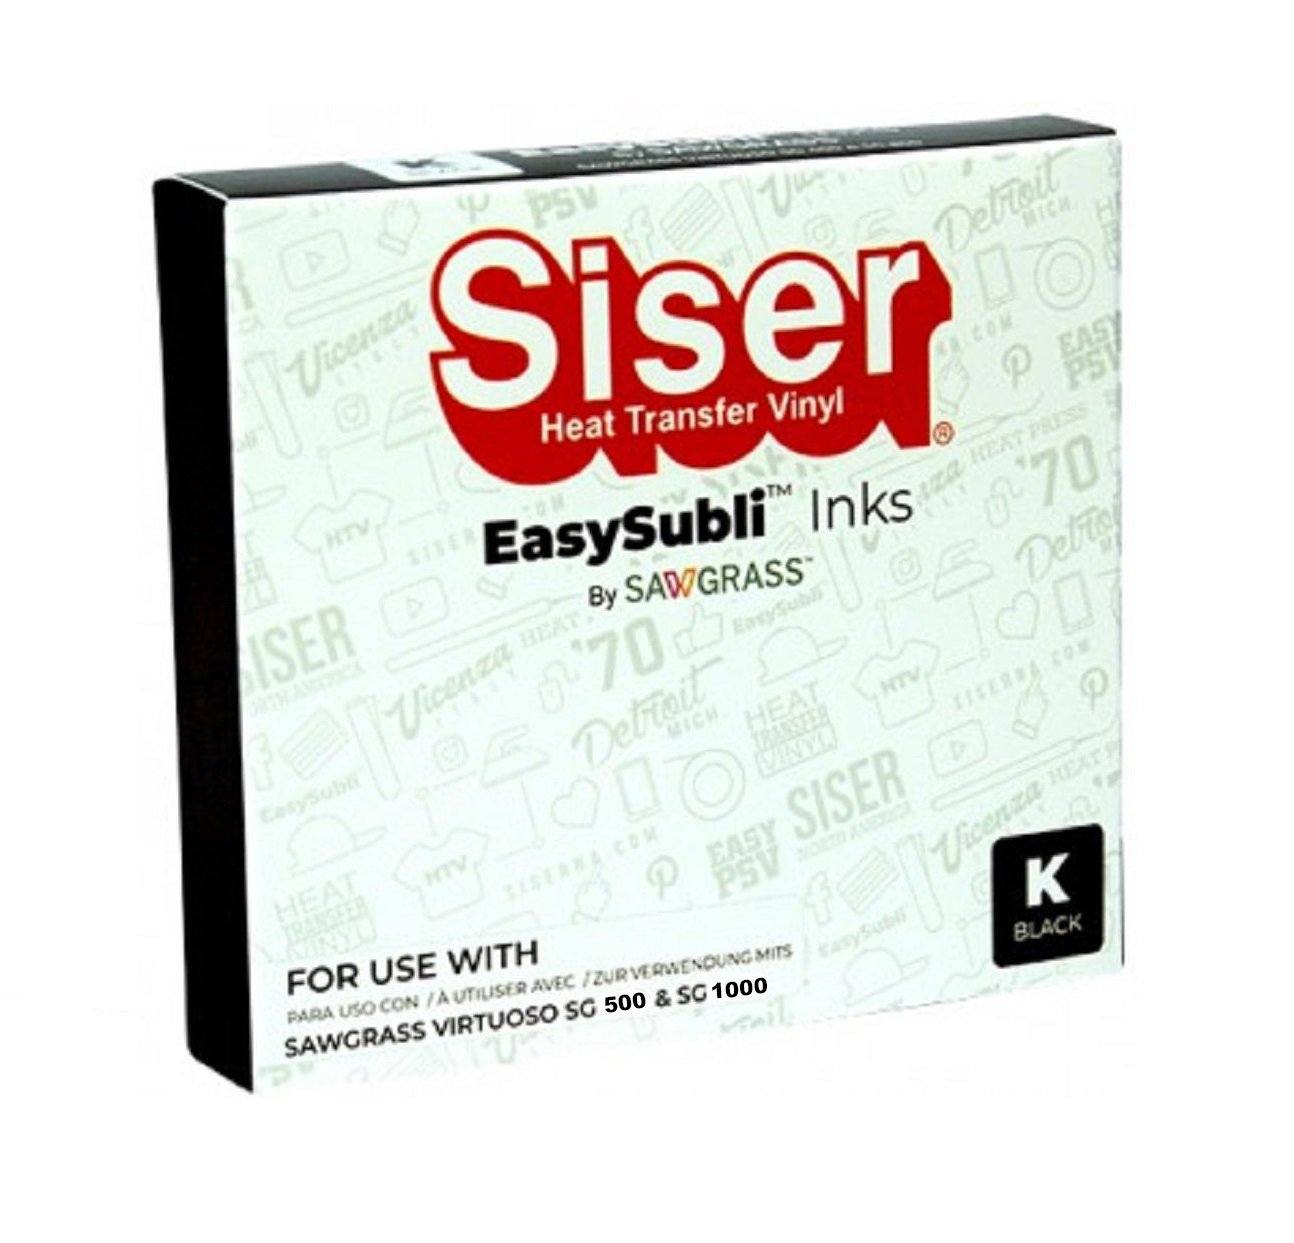 Siser EasySubli UHD ink for Sawgrass SG500 & SG1000